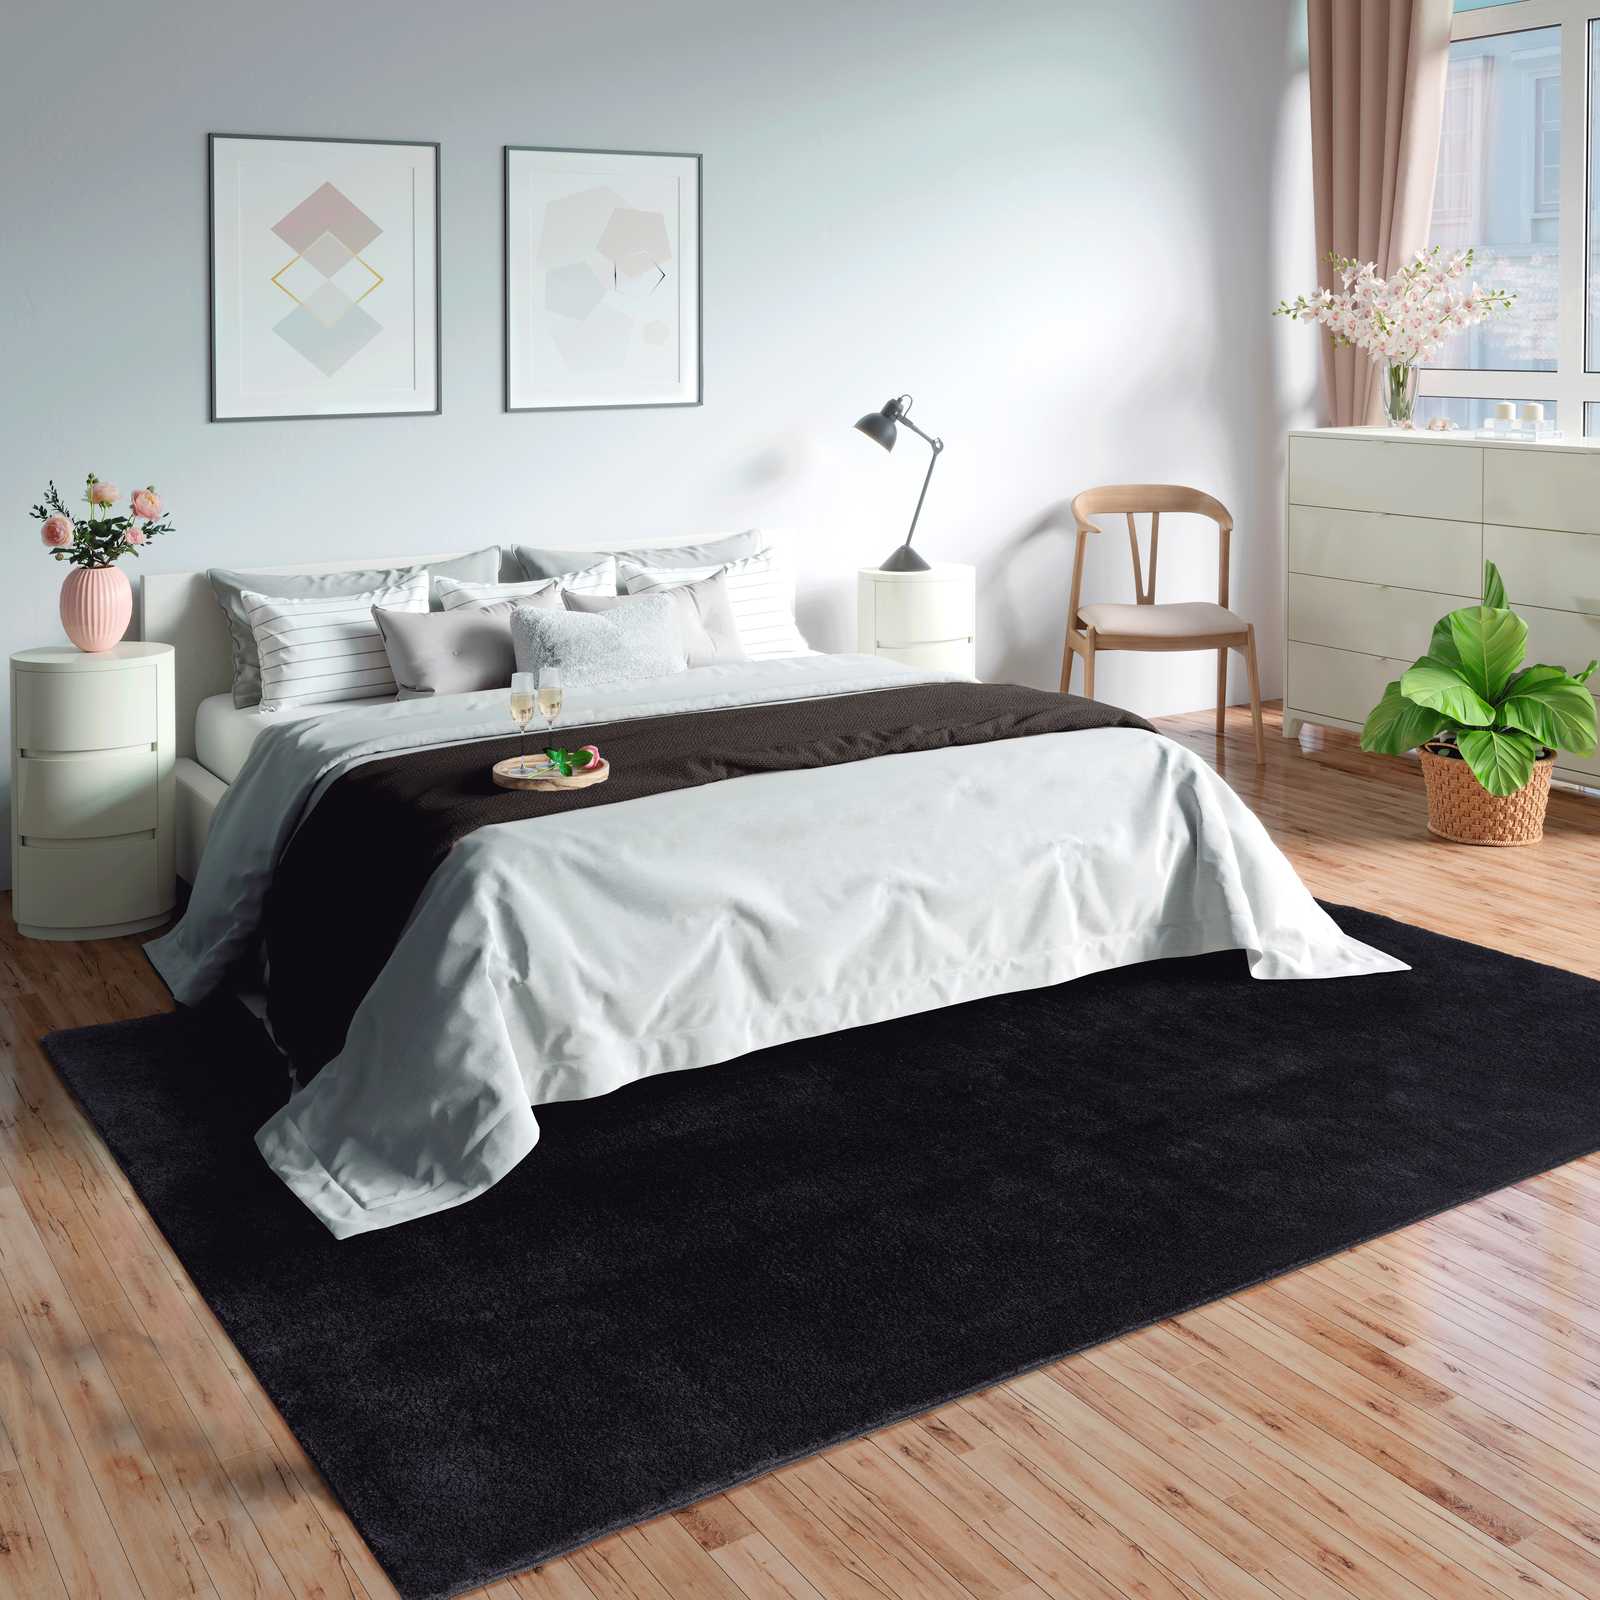 Fluweelzacht hoogpolig tapijt in zwart - 110 x 60 cm
